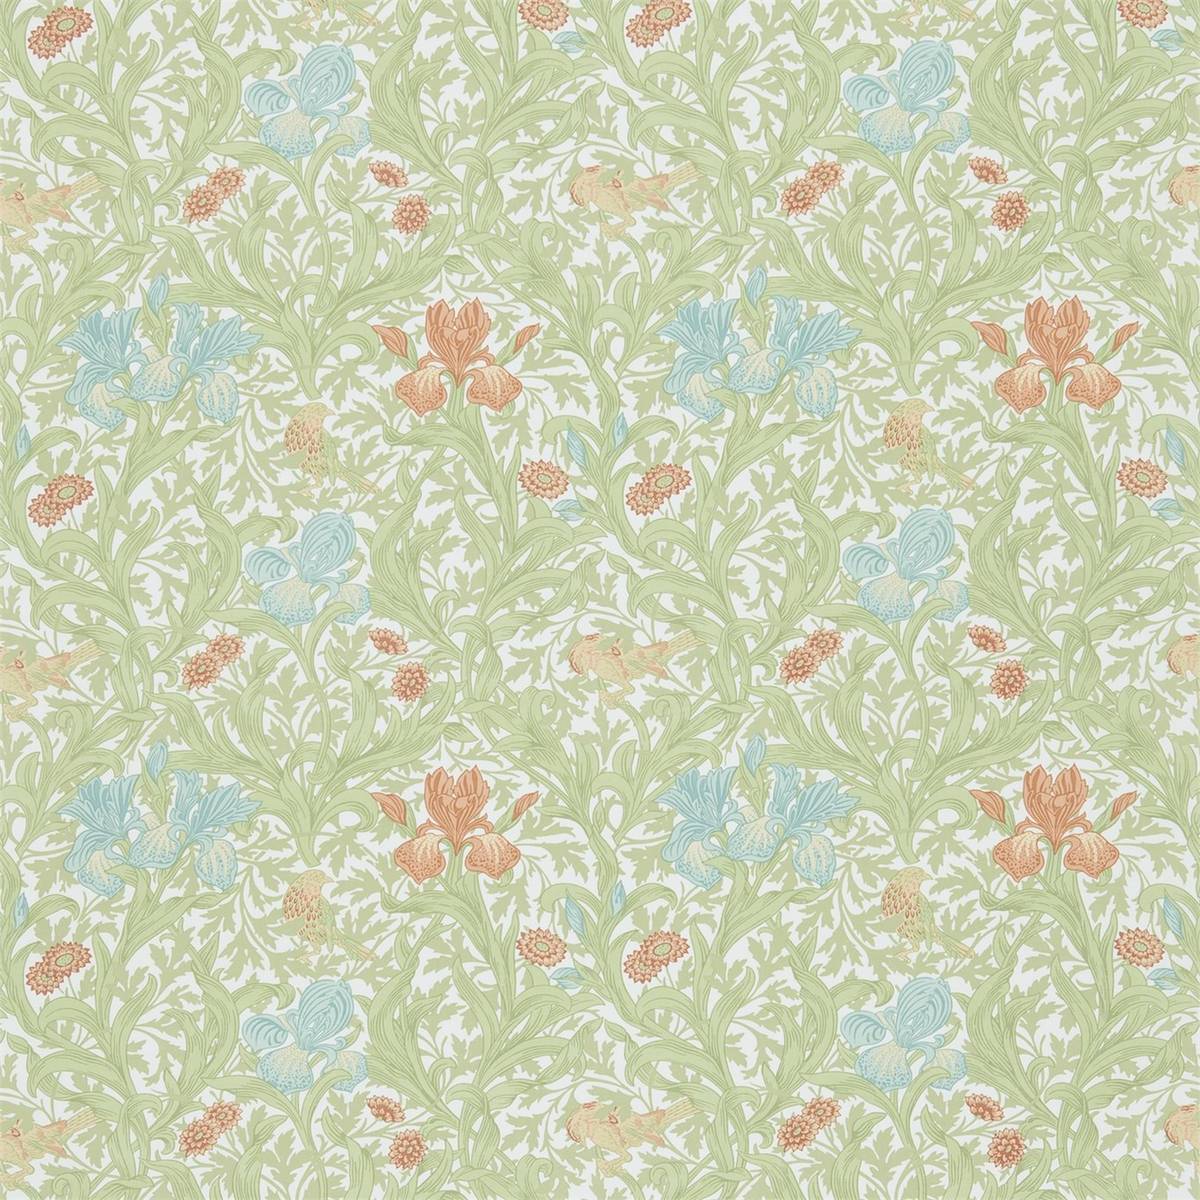 Iris Fennel/Aqua Fabric by William Morris & Co.